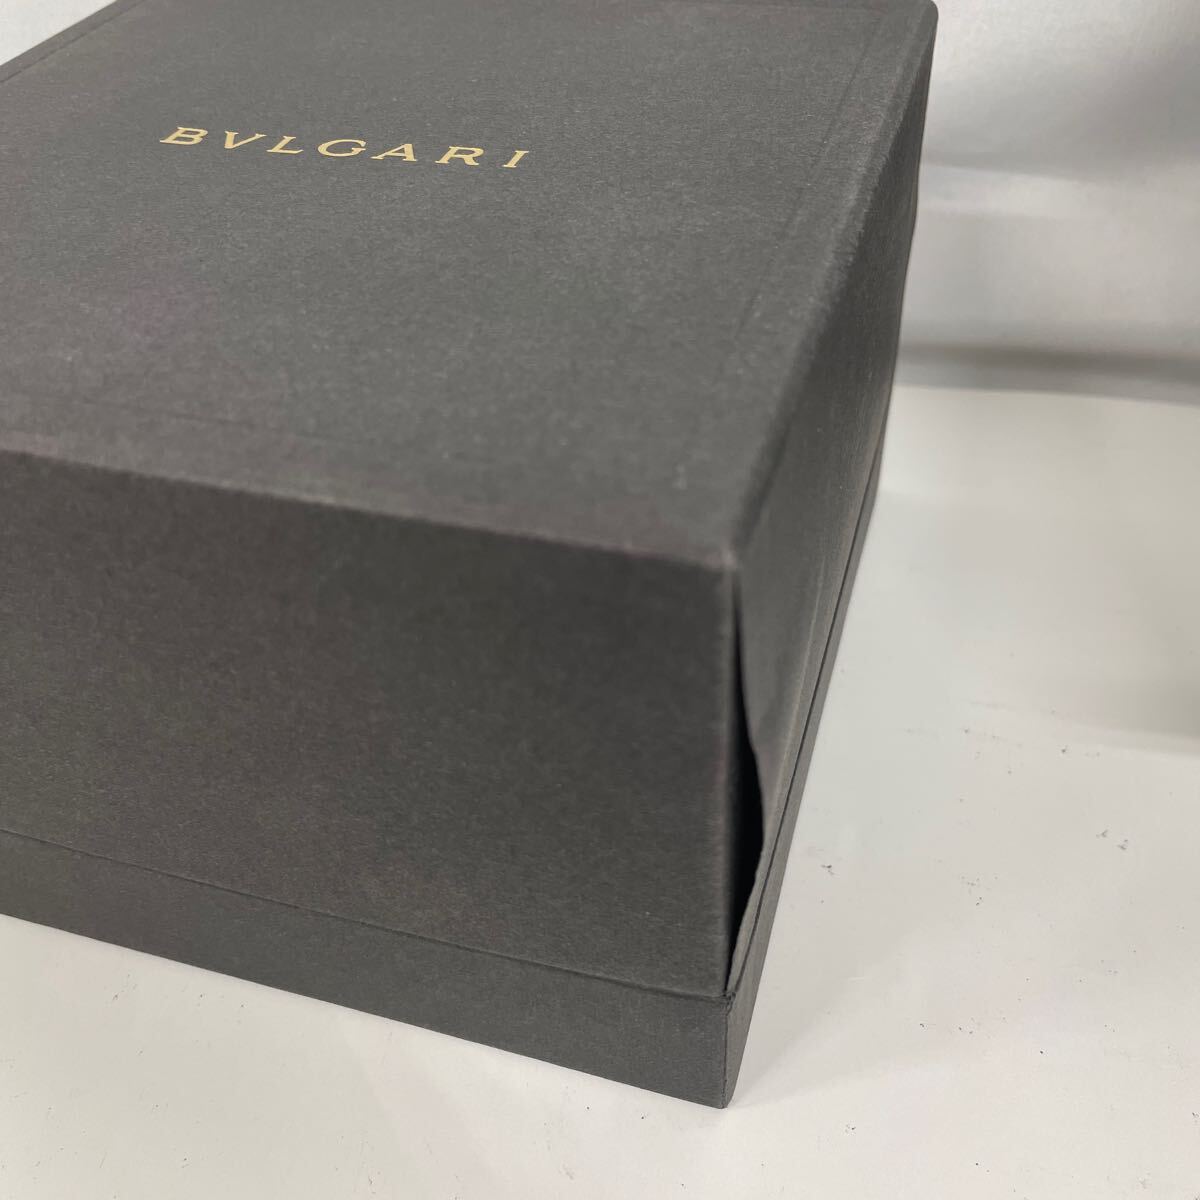  BVLGARY BVLGARI кейс для часов часы место хранения комплект несессер box пустой коробка принадлежности 0310 BOX